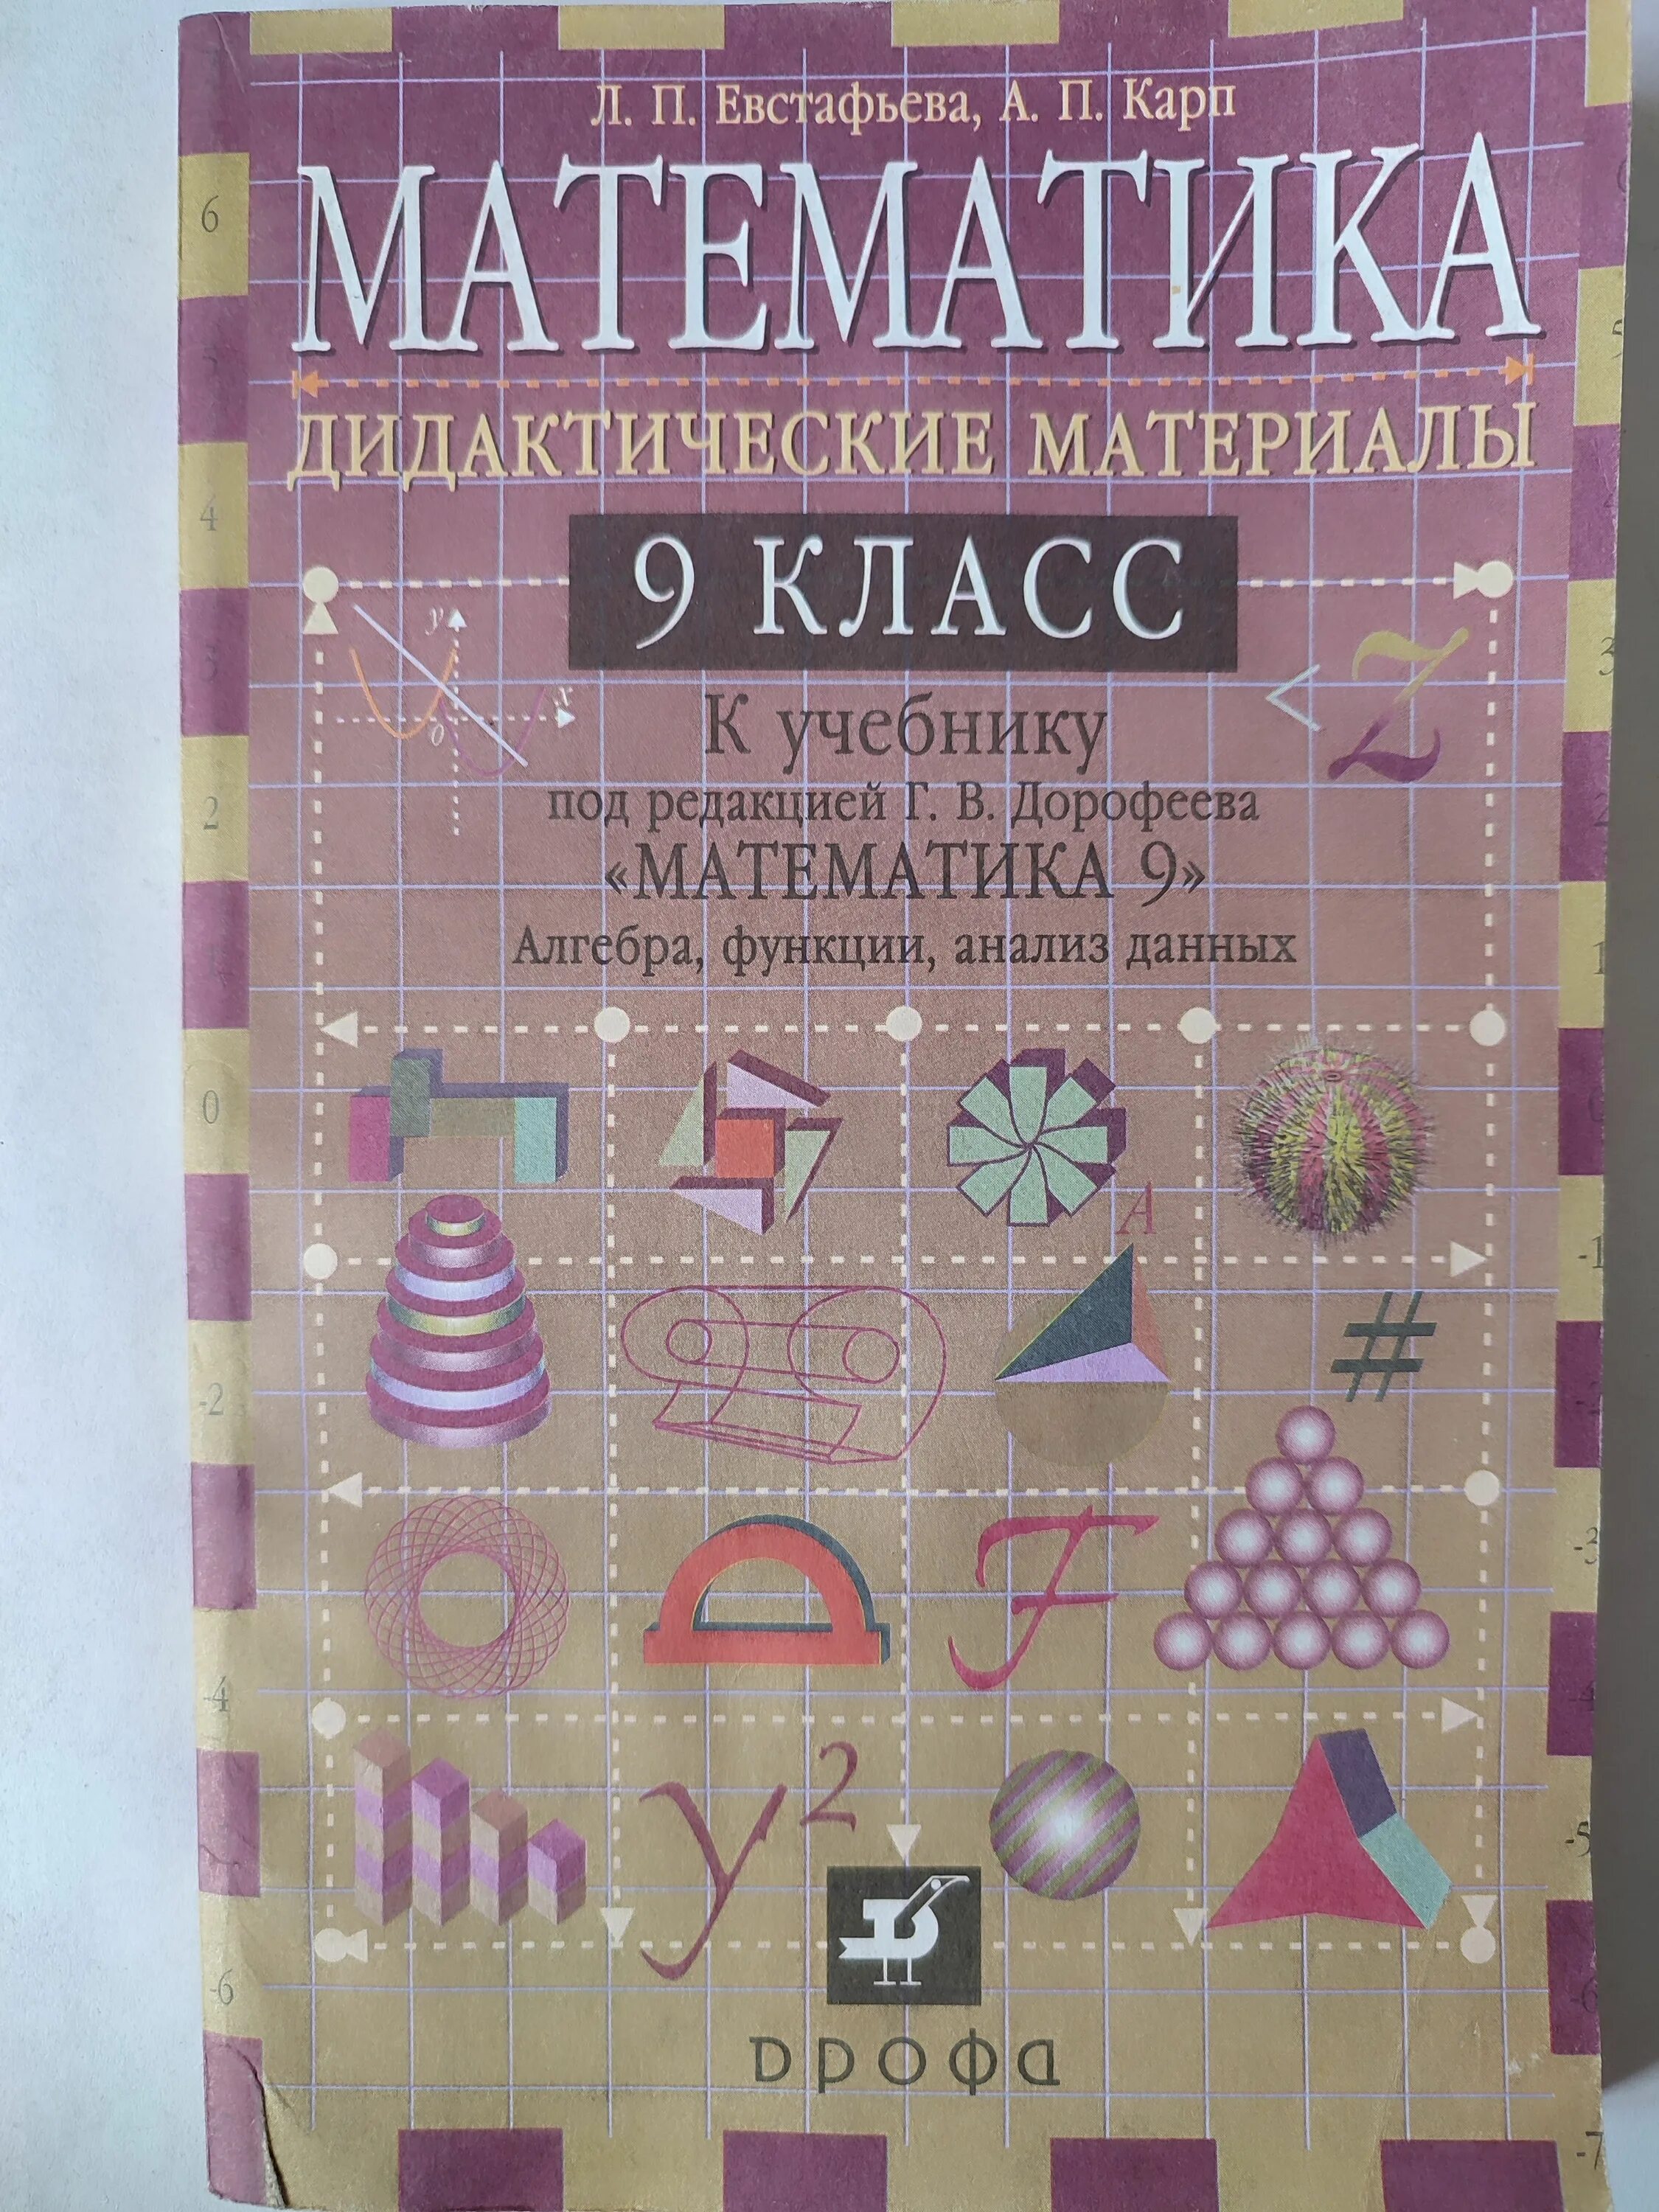 Материал 9 класс. Математика дидактические материалы 9 класс. Справочник для математики 9 класс. Математика 9 класс материал. Математика 9 класс учебник.